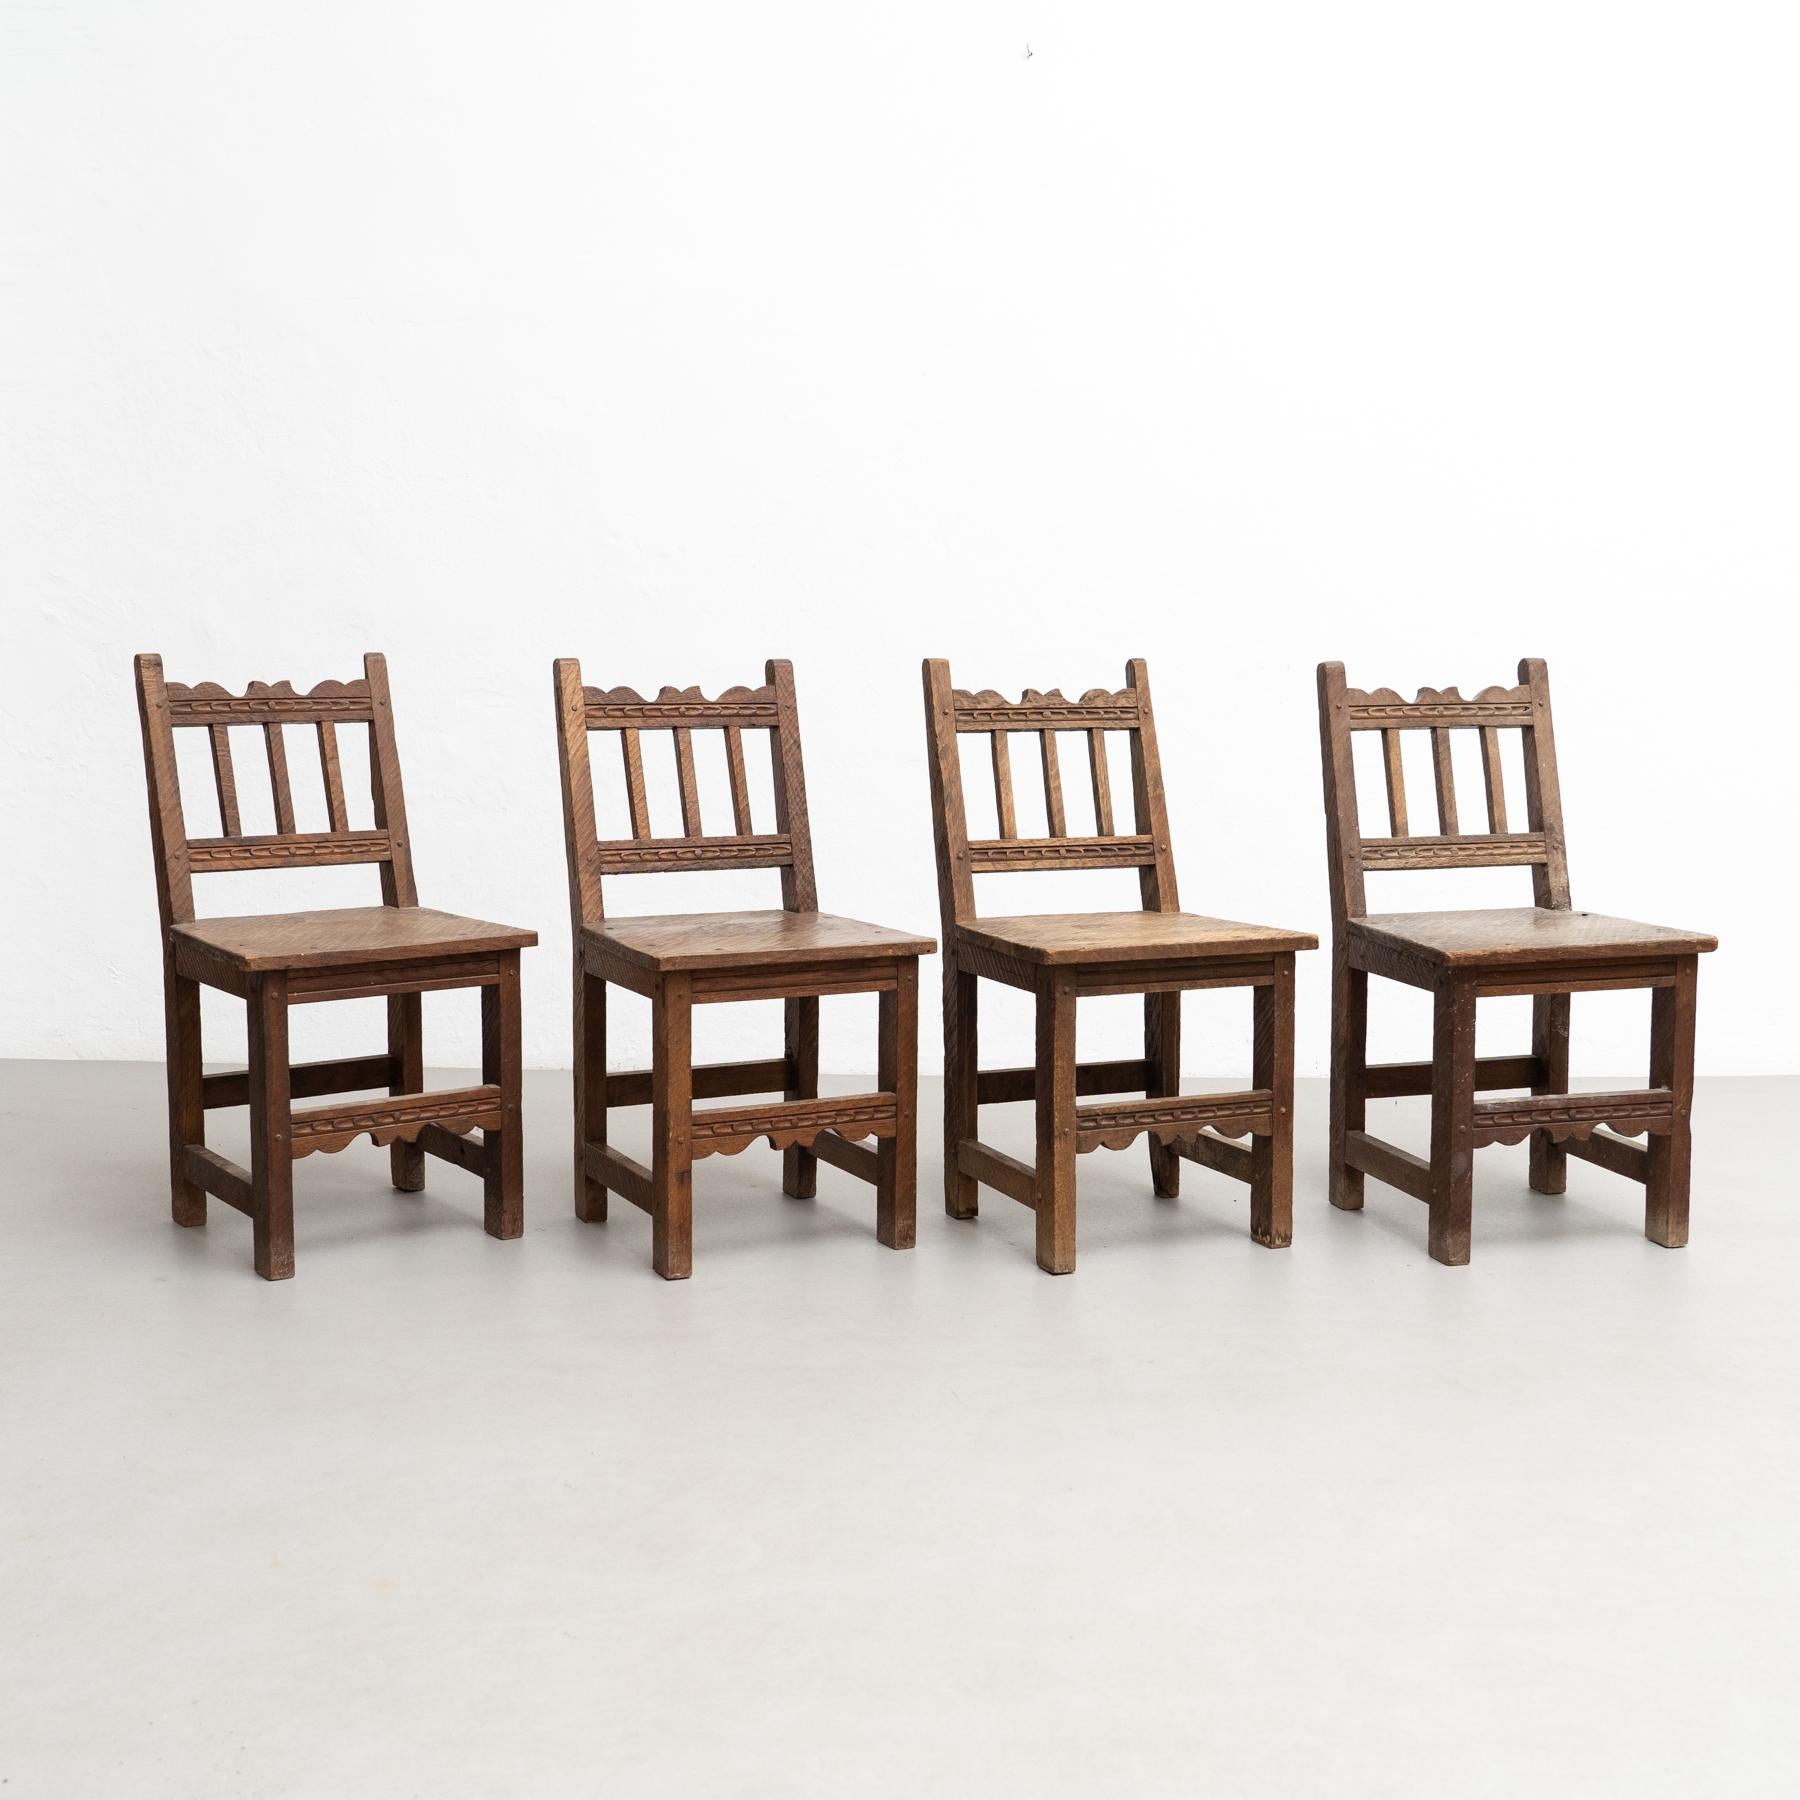 Conjunto de cuatro sillas francesas de madera rústica.

Disfruta del encanto rústico de este conjunto de cuatro sillas de madera racionalistas modernas de mediados de siglo, fabricadas en Francia hacia 1940. Estas sillas presentan un diseño